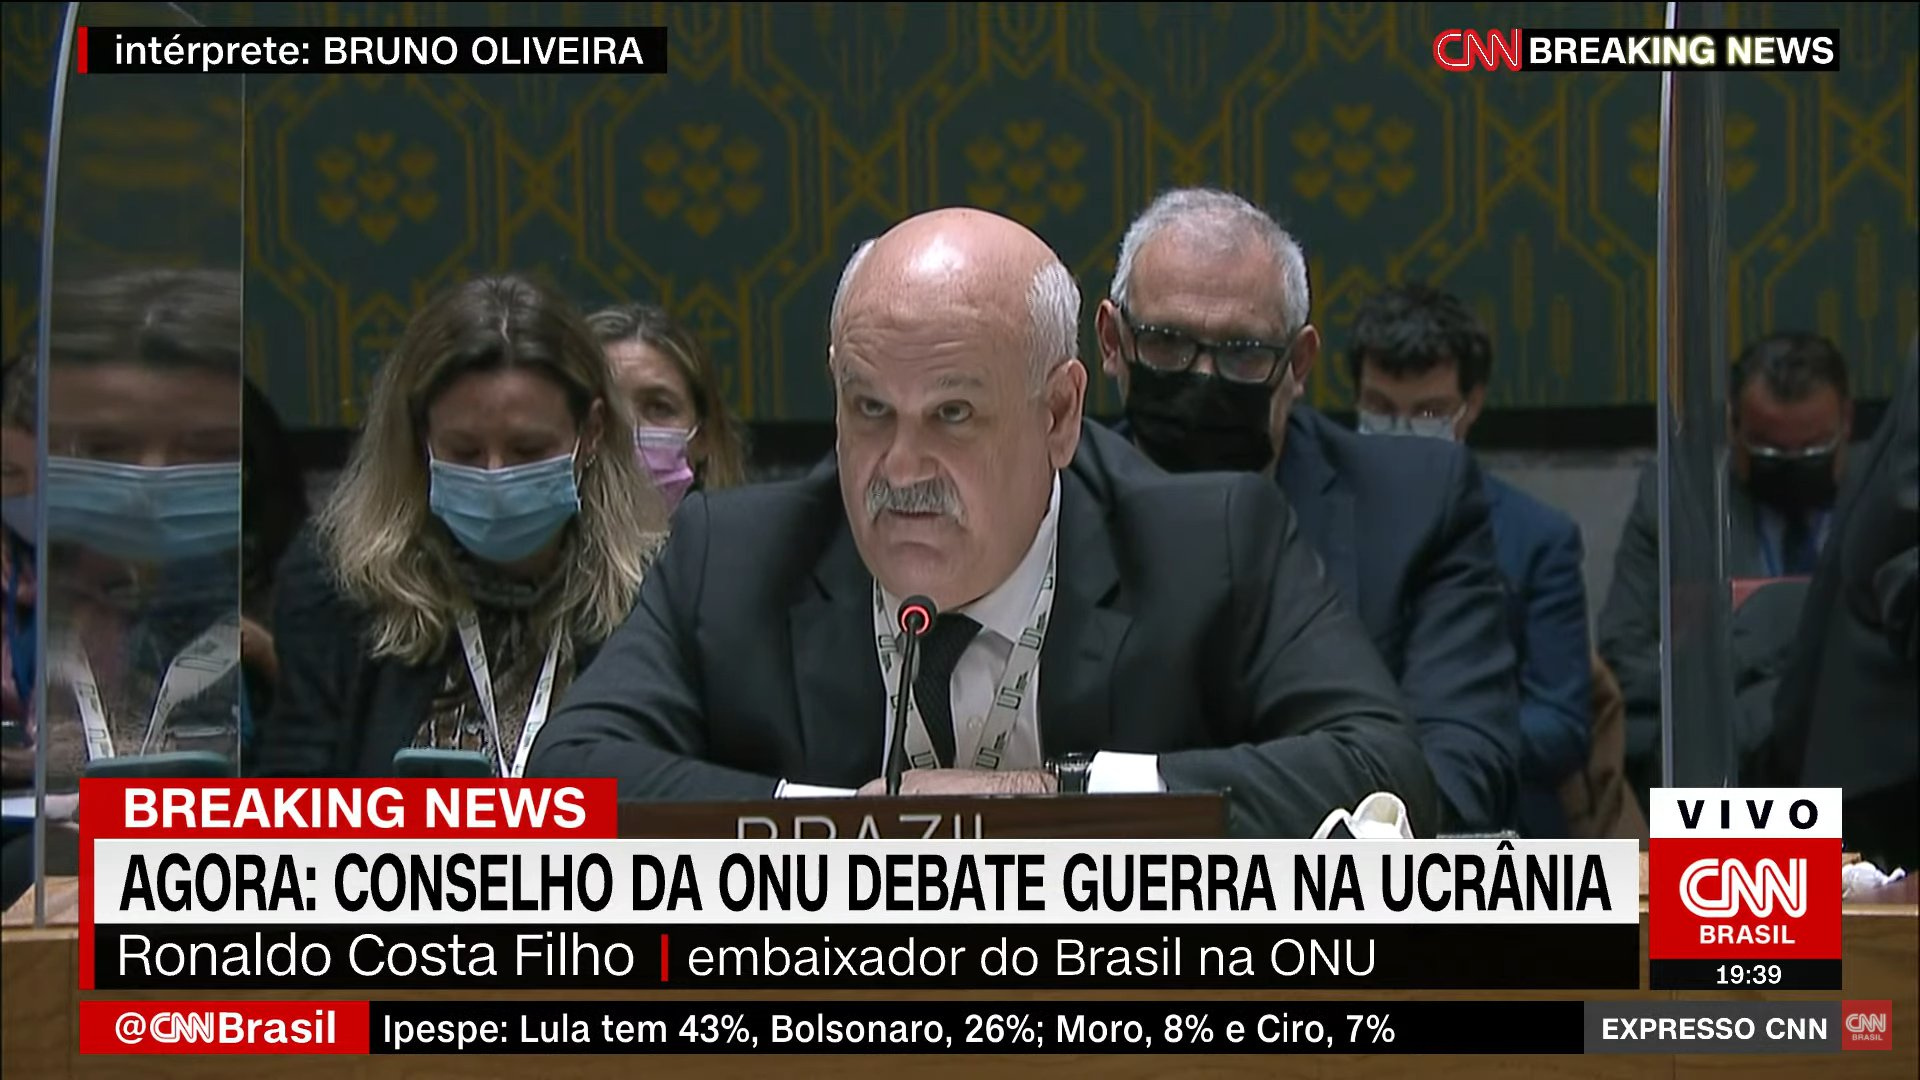 Pressionado por EUA, Brasil vota contra invasão da Rússia à Ucrânia. Foto do embaixador brasileiro em uma reunião na ONU.